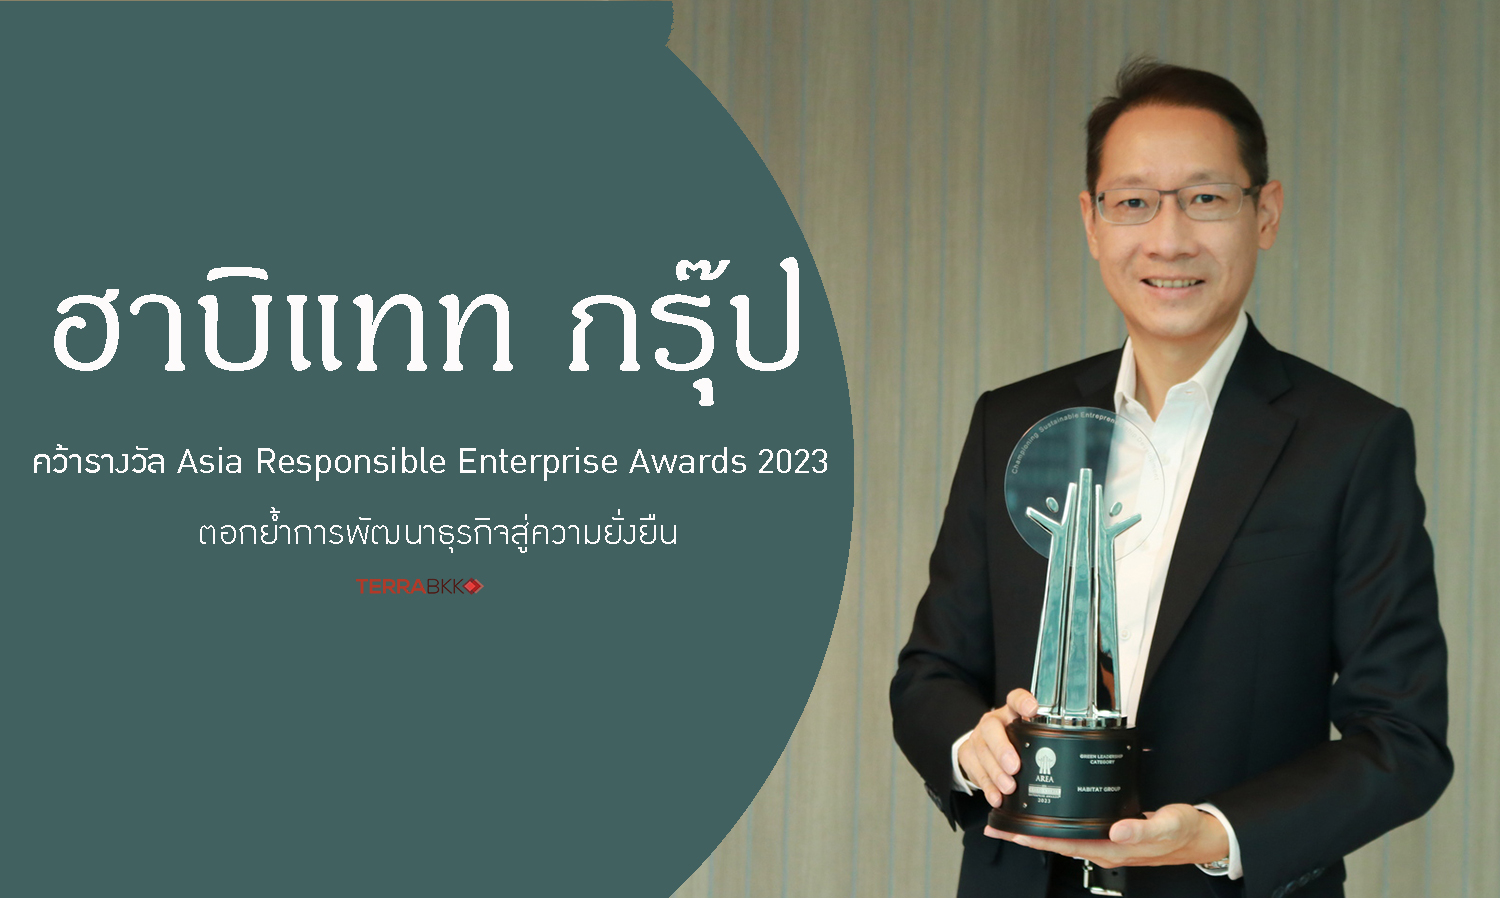 ‘ฮาบิแทท กรุ๊ป’ คว้ารางวัล Asia Responsible Enterprise Awards 2023 ตอกย้ำการพัฒนาธุรกิจสู่ความยั่งยืน